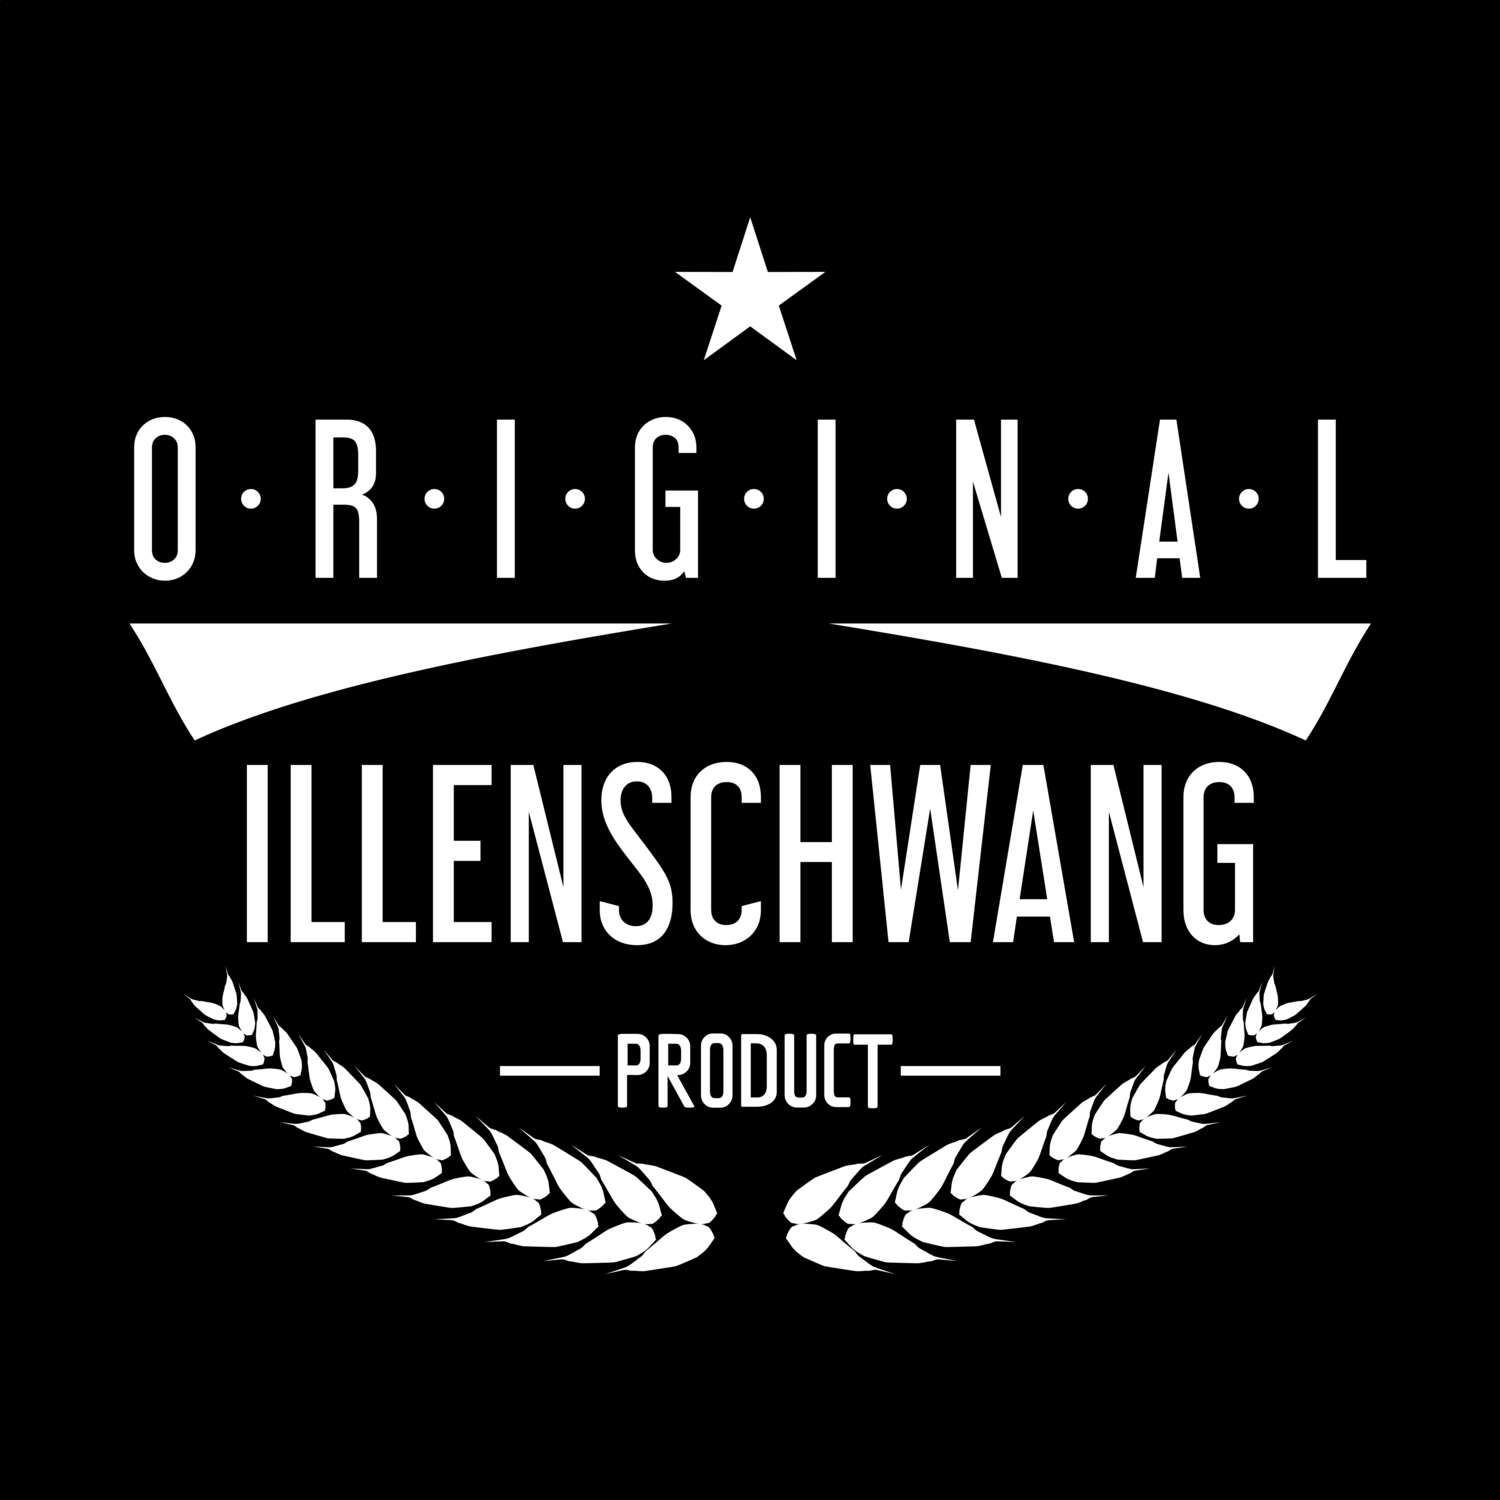 Illenschwang T-Shirt »Original Product«